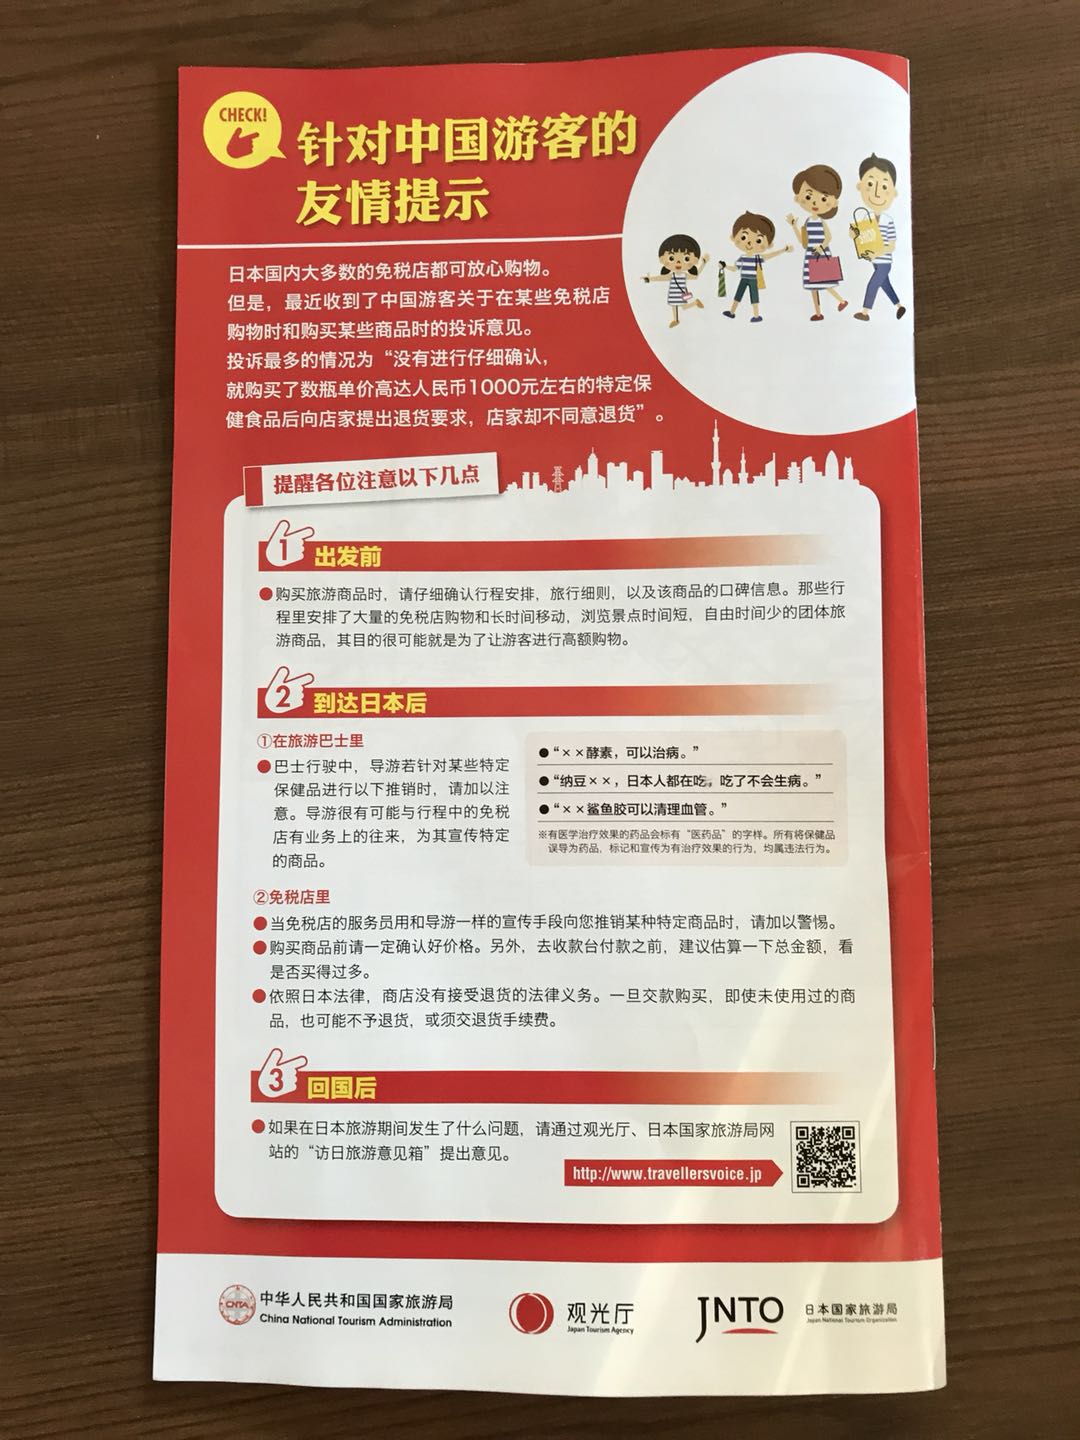 中国国家旅游局和日本观光厅合作的旅游指南，最后一页是关于购物方面的友情提示